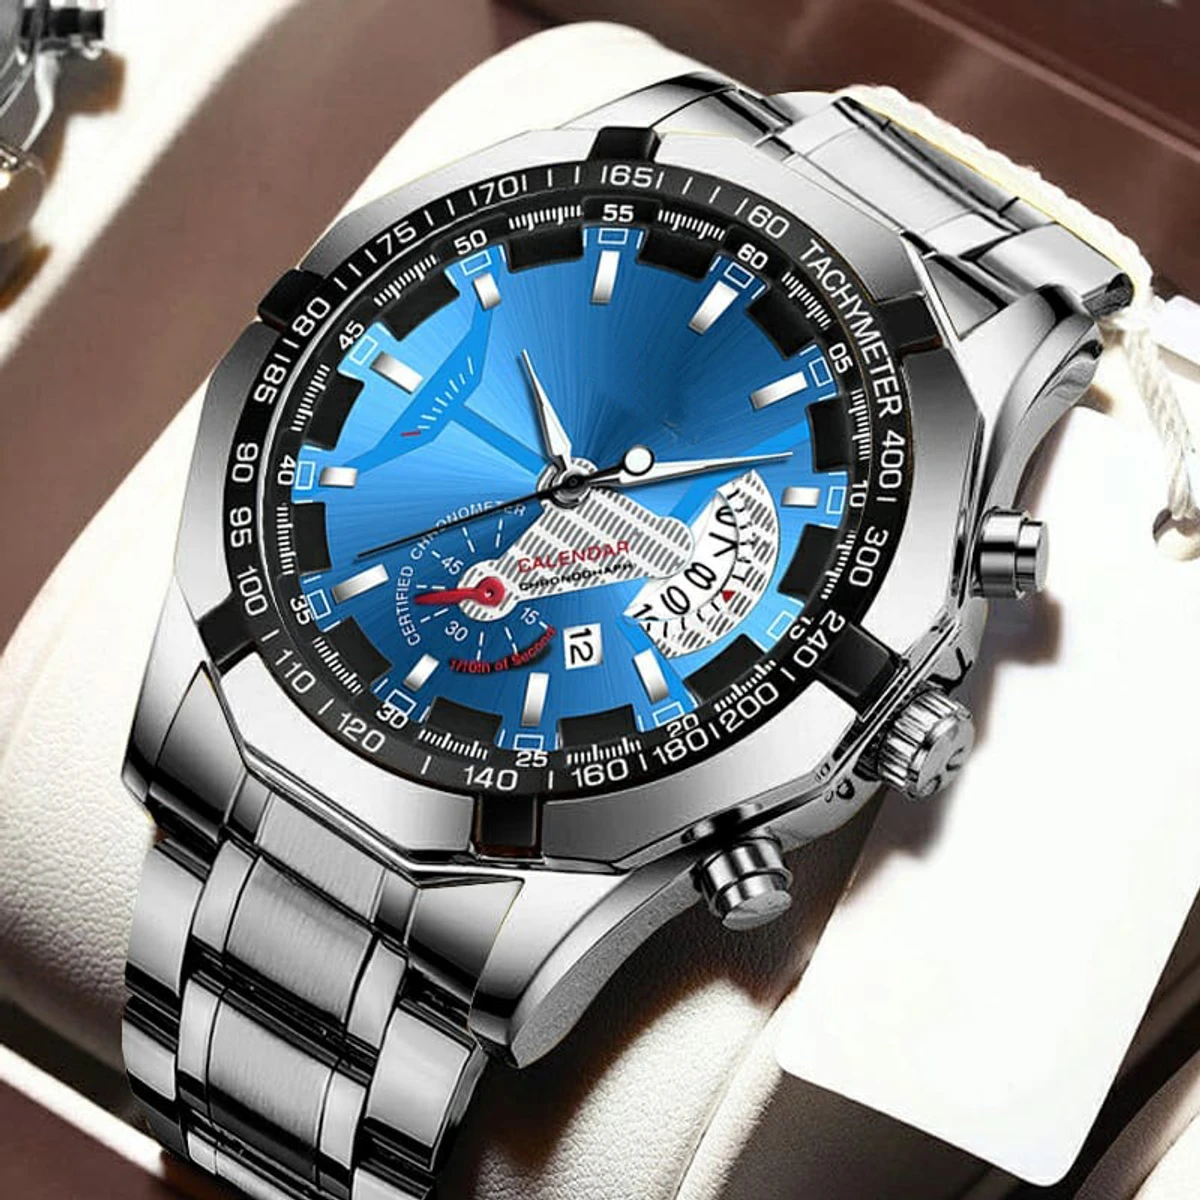 Oruss Luxury Men Watches Business Top Brand Man Wristwatch Waterproof Luminous Date Quartz Men's Watch High Quality- Blue & Silver